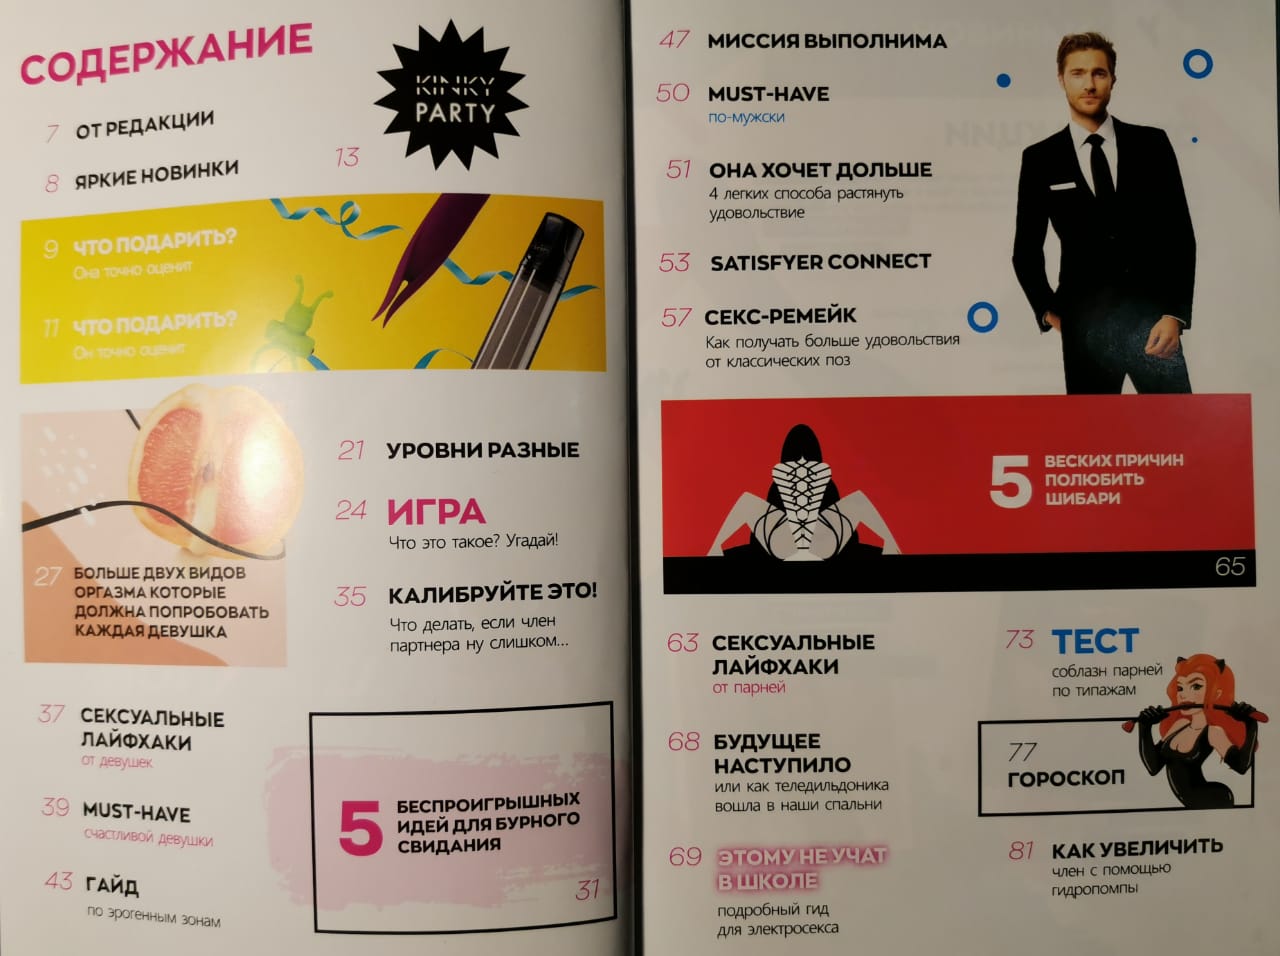 Журнал "Голая правда" №2 2021, арт. 71.42